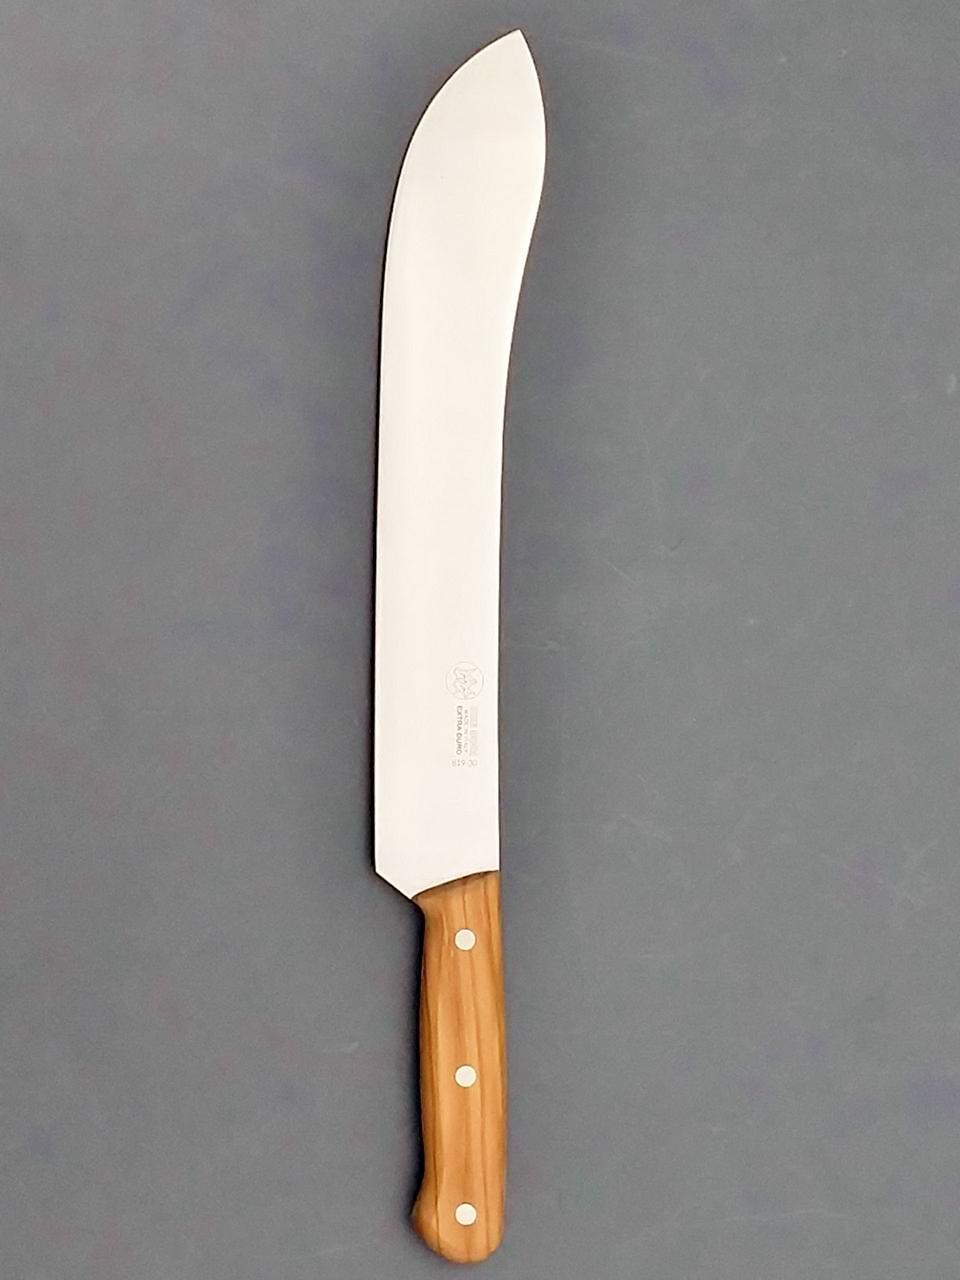 SABER KNIFE 12" BLADE - SOLID OLIVE WOOD FULL TANG HANDLE